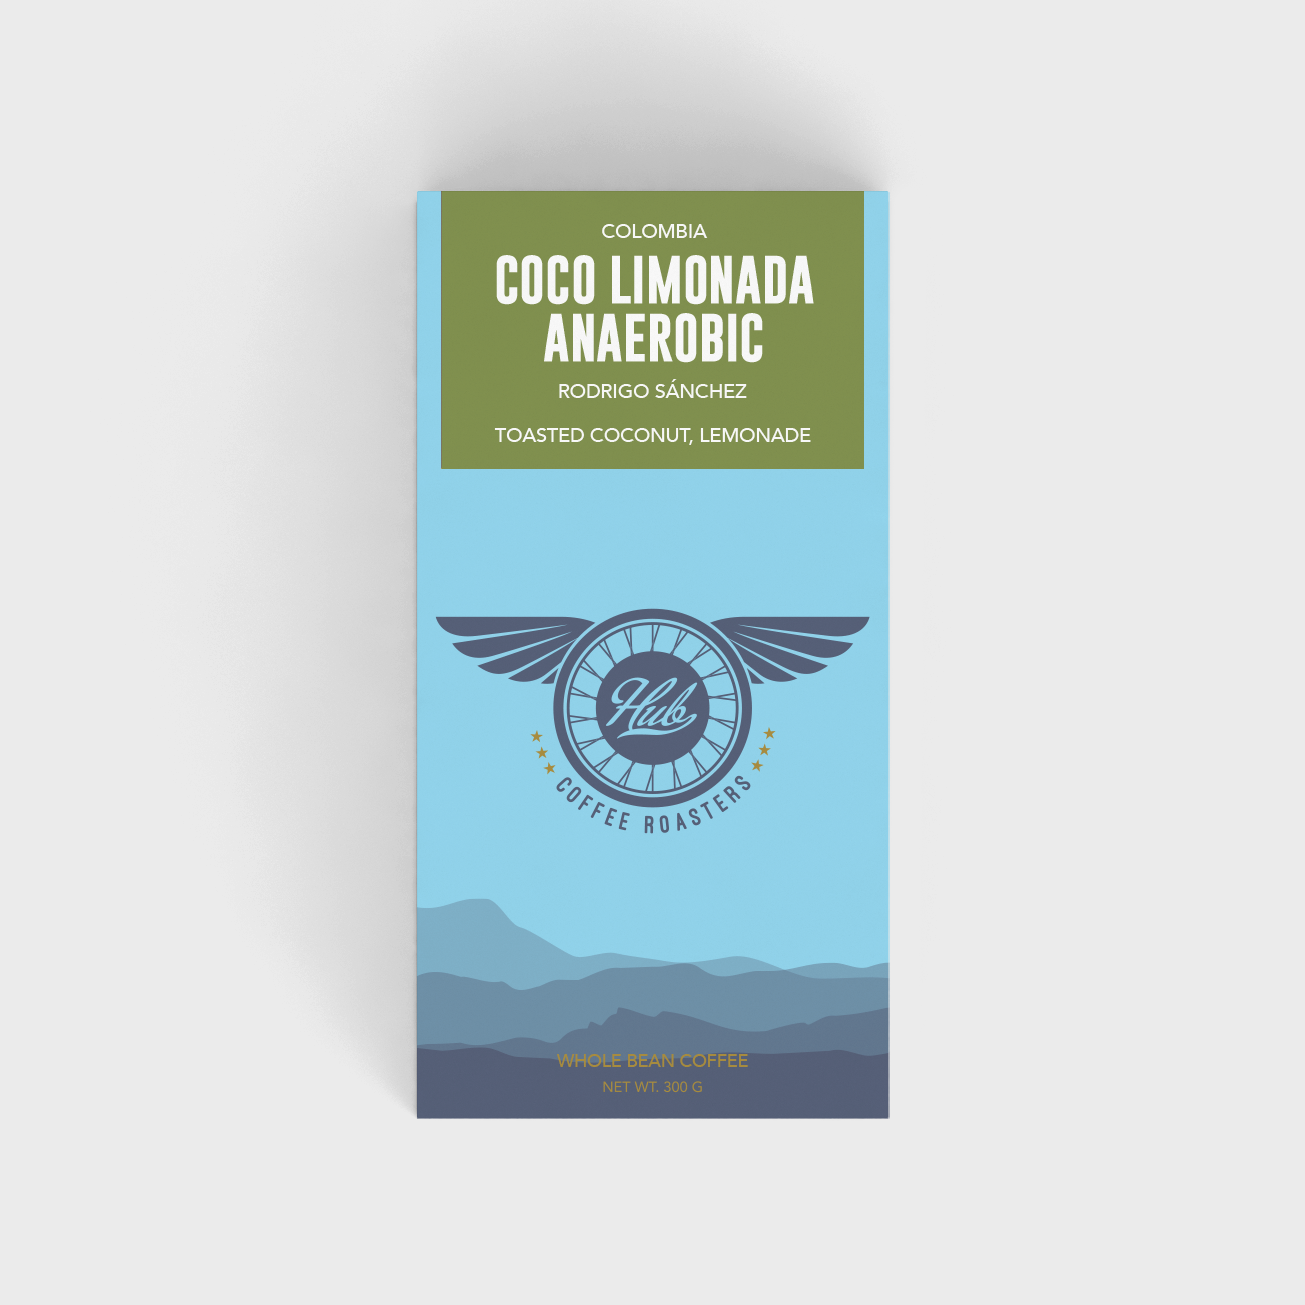 COLOMBIA COCO LIMONADA ANAEROBIC